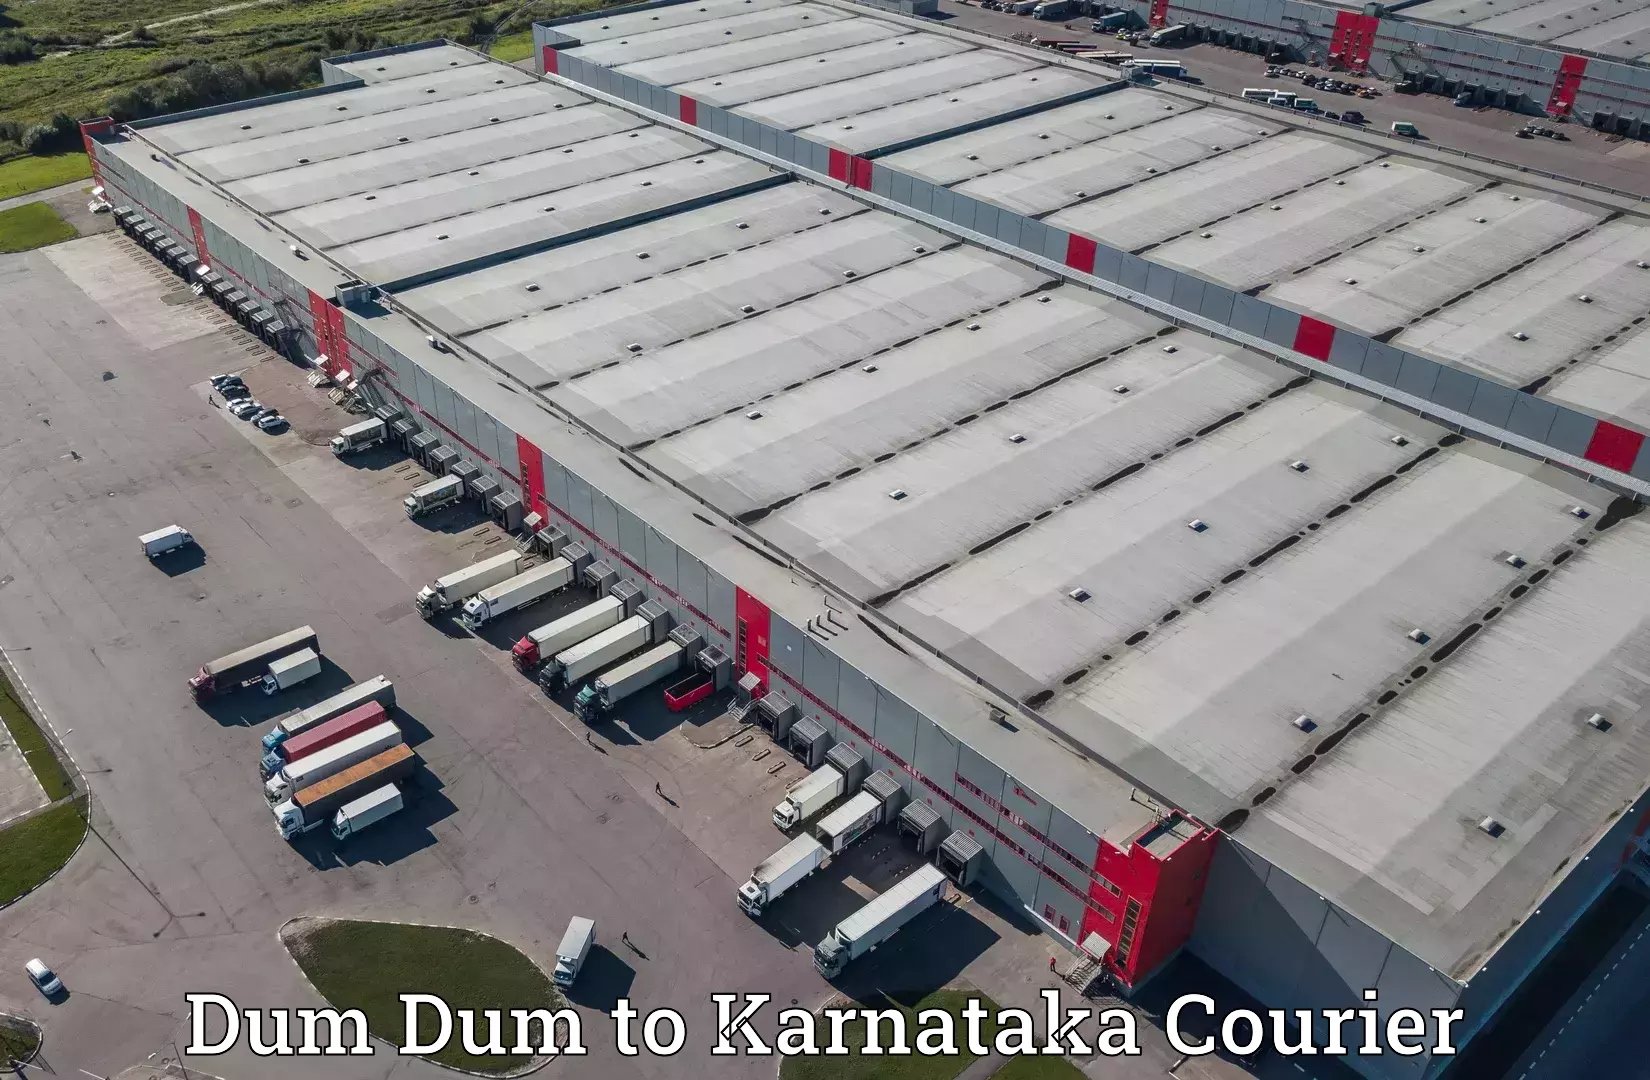 Cross-border shipping Dum Dum to Jagalur